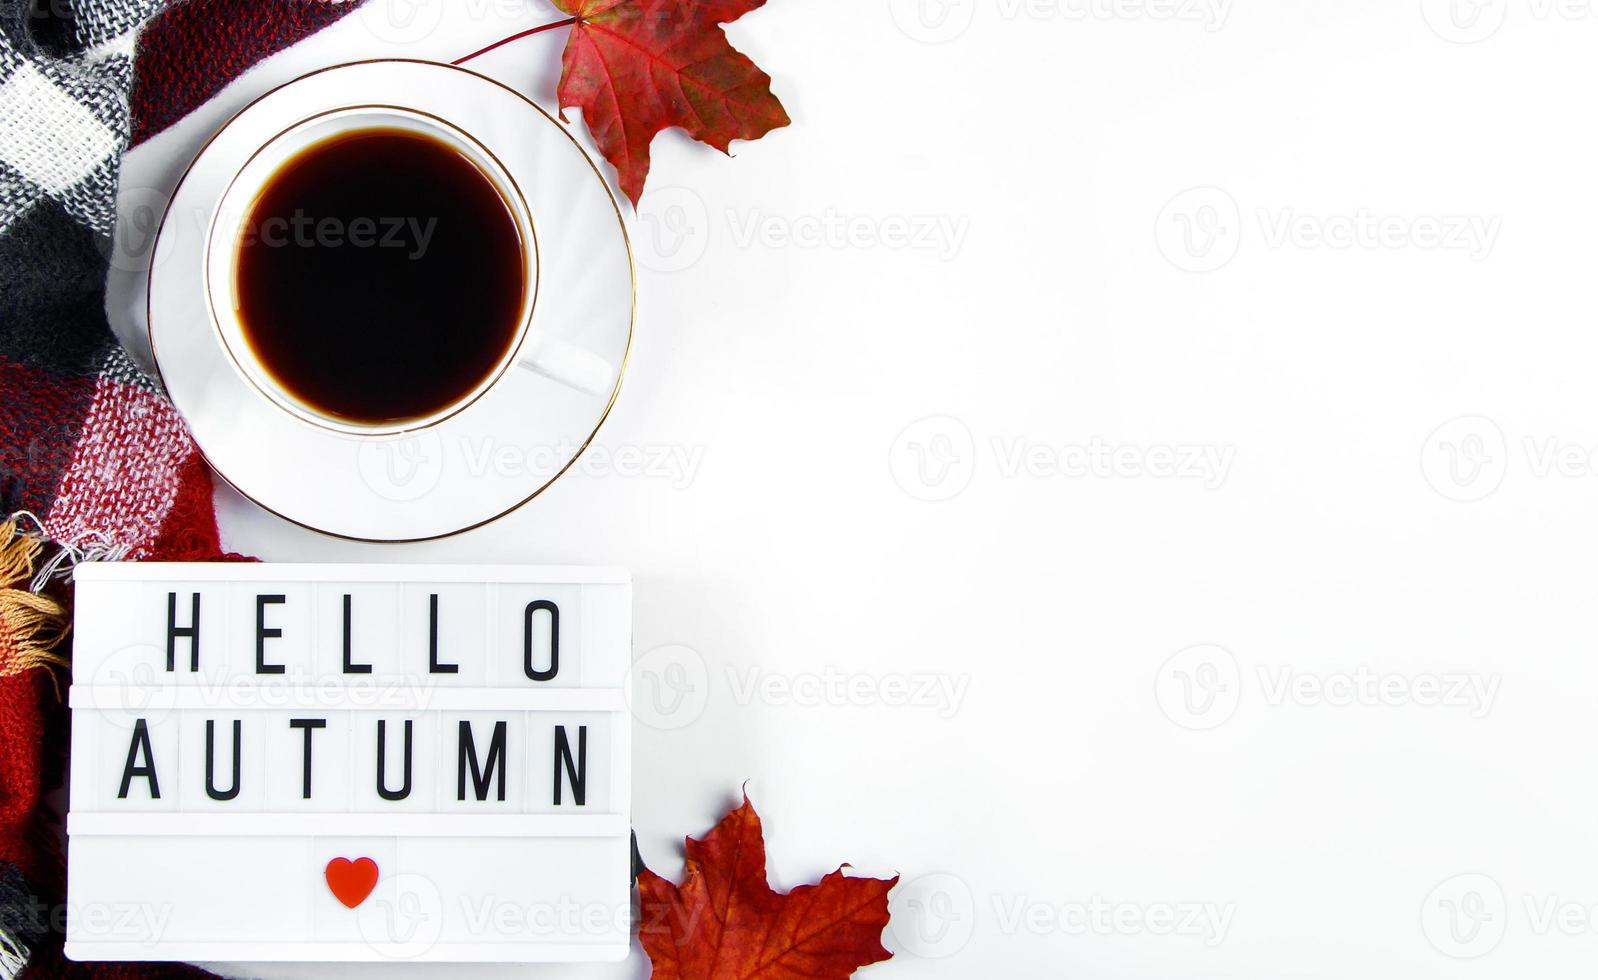 hola concepto de otoño. taza de café espresso caliente y hojas rojas caídas sobre fondo blanco. tela escocesa caliente y bebida para el clima frío. foto